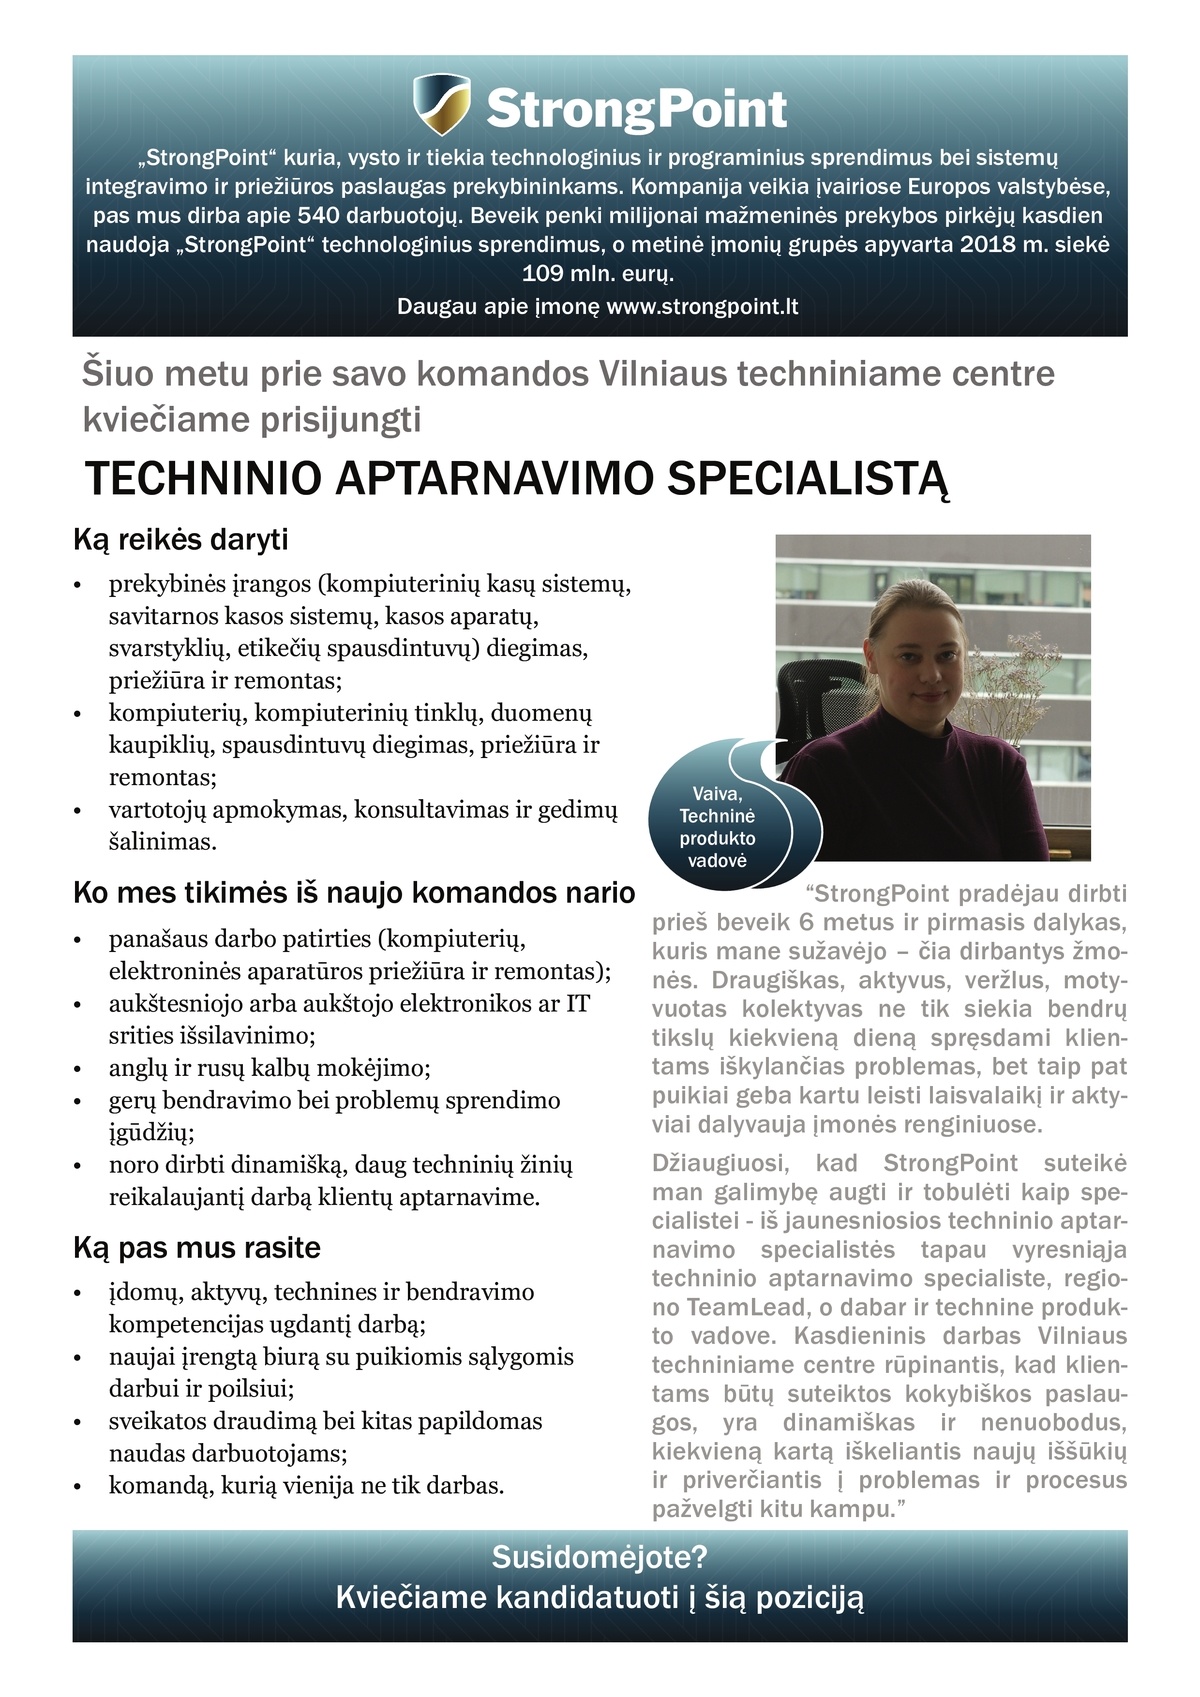 StrongPoint, UAB Techninio aptarnavimo specialistas